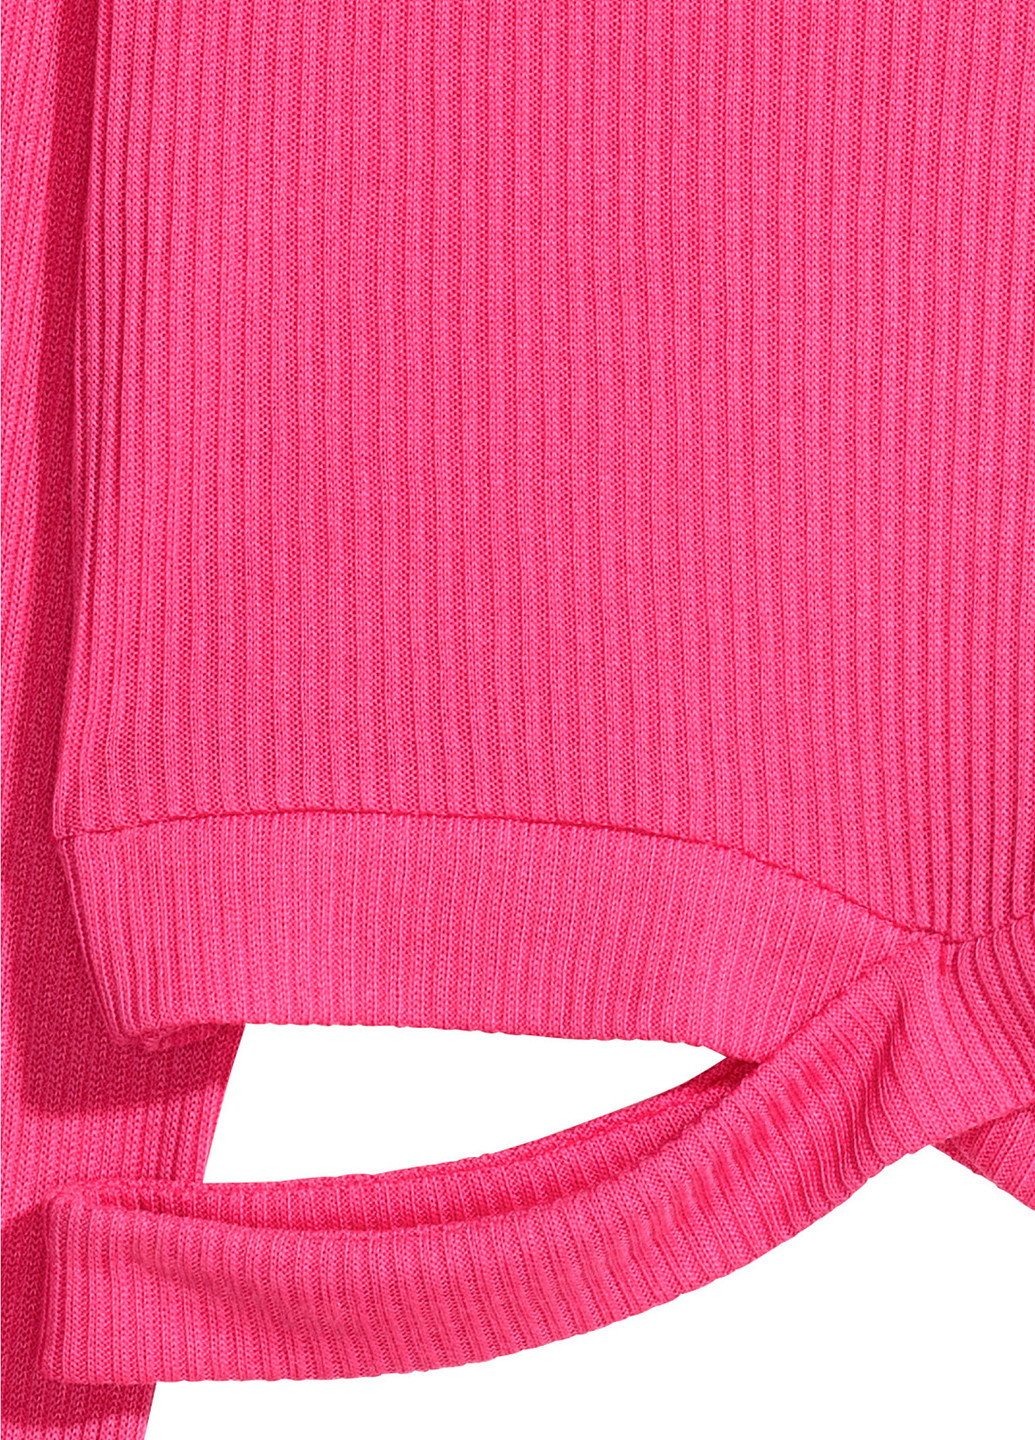 Топ H&M однотонный розовый кэжуал полиэстер, трикотаж